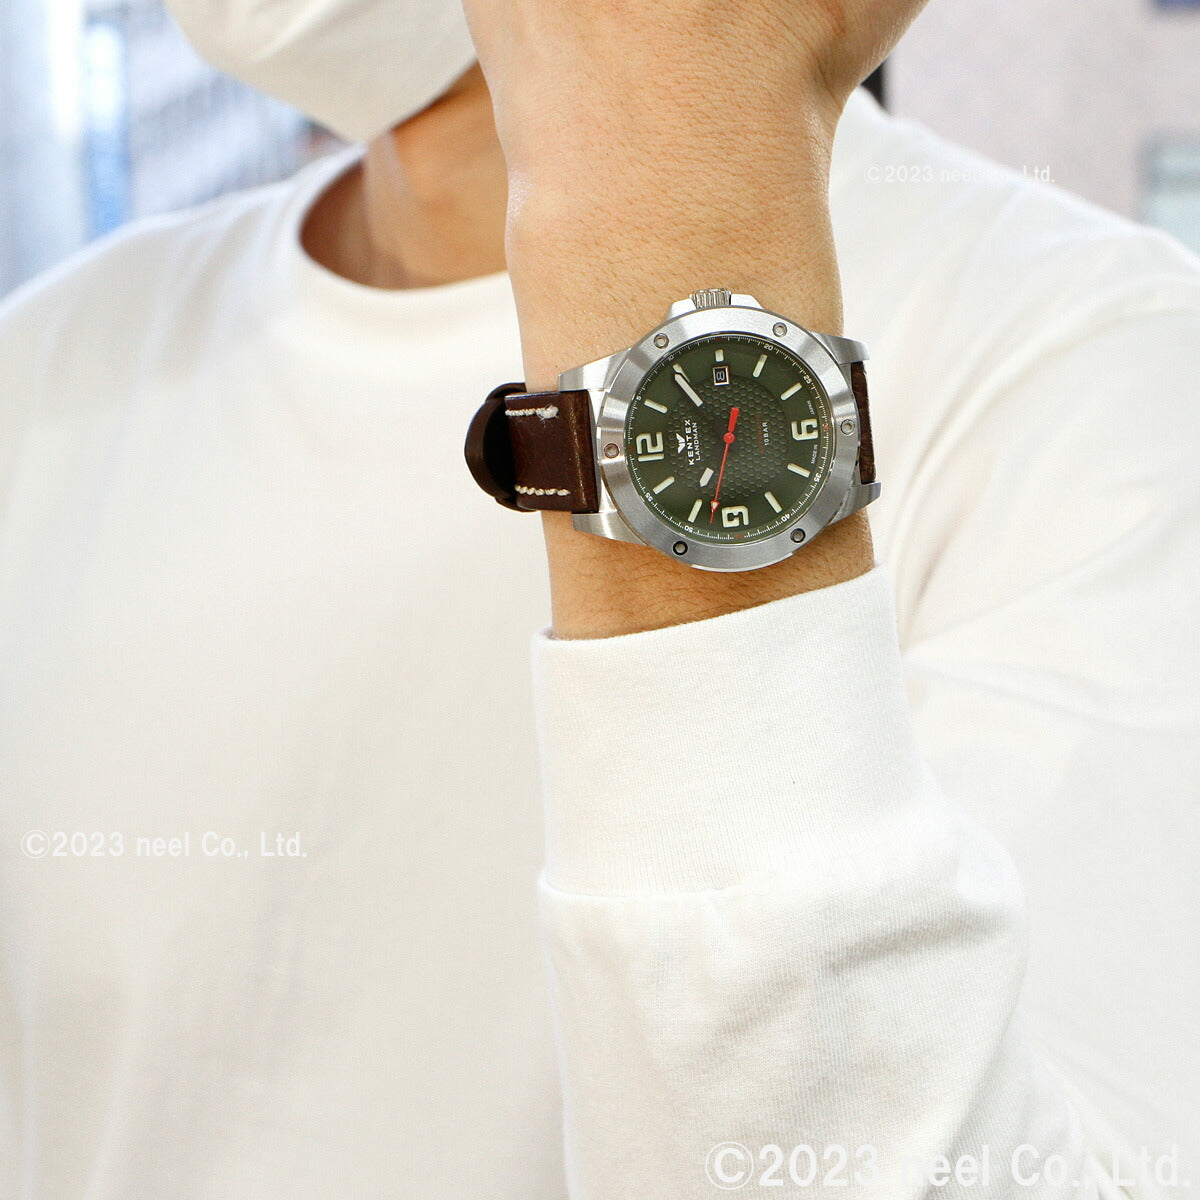 ケンテックス KENTEX 限定モデル 腕時計 時計 メンズ ランドマン アドベンチャー デイト 日本製 S763X-2